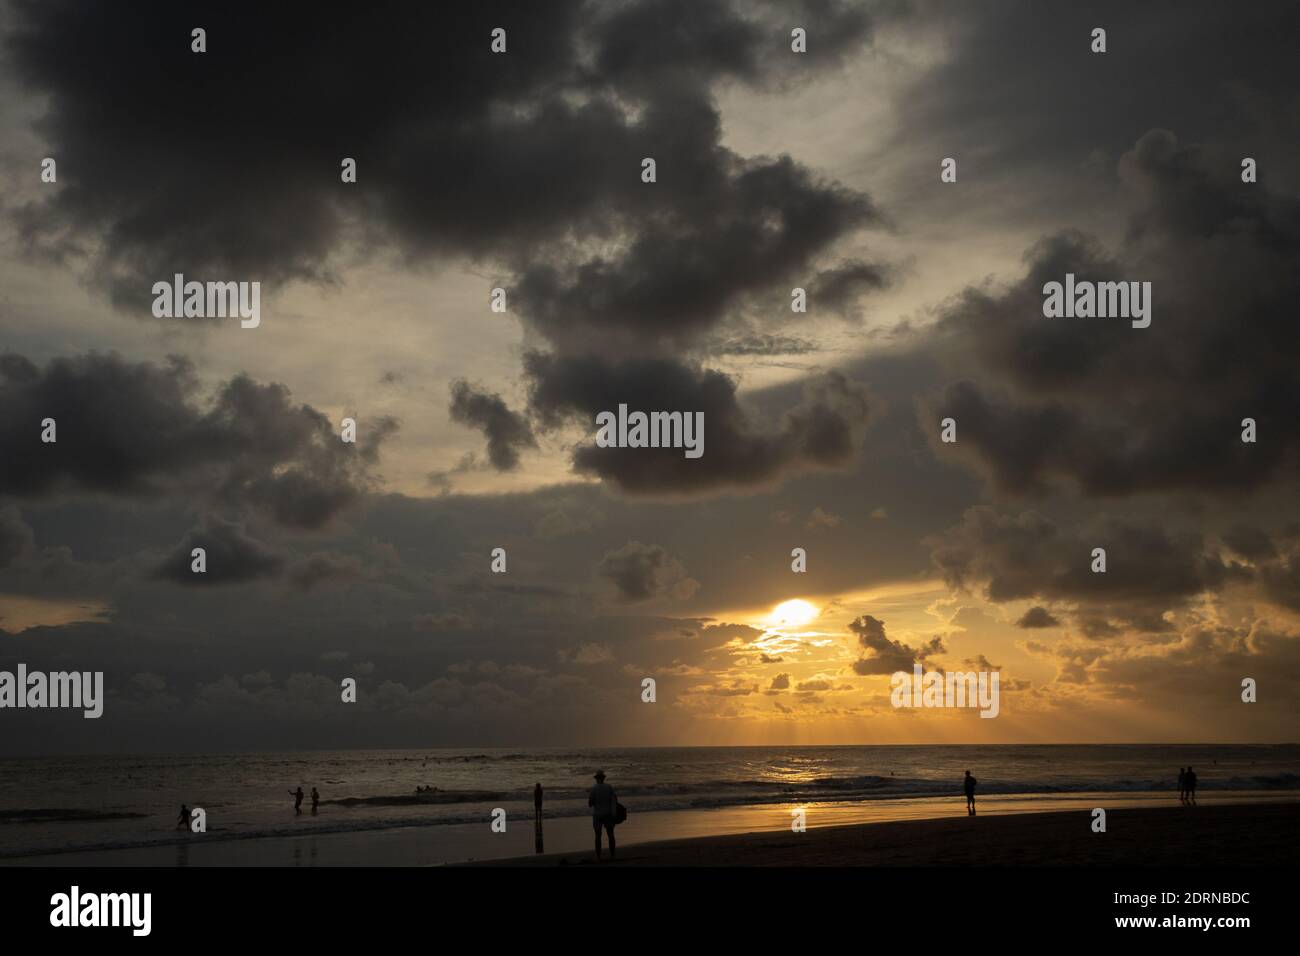 Les surfeurs et les touristes silhouettes sur la côte de l'océan au coucher du soleil rouge Banque D'Images